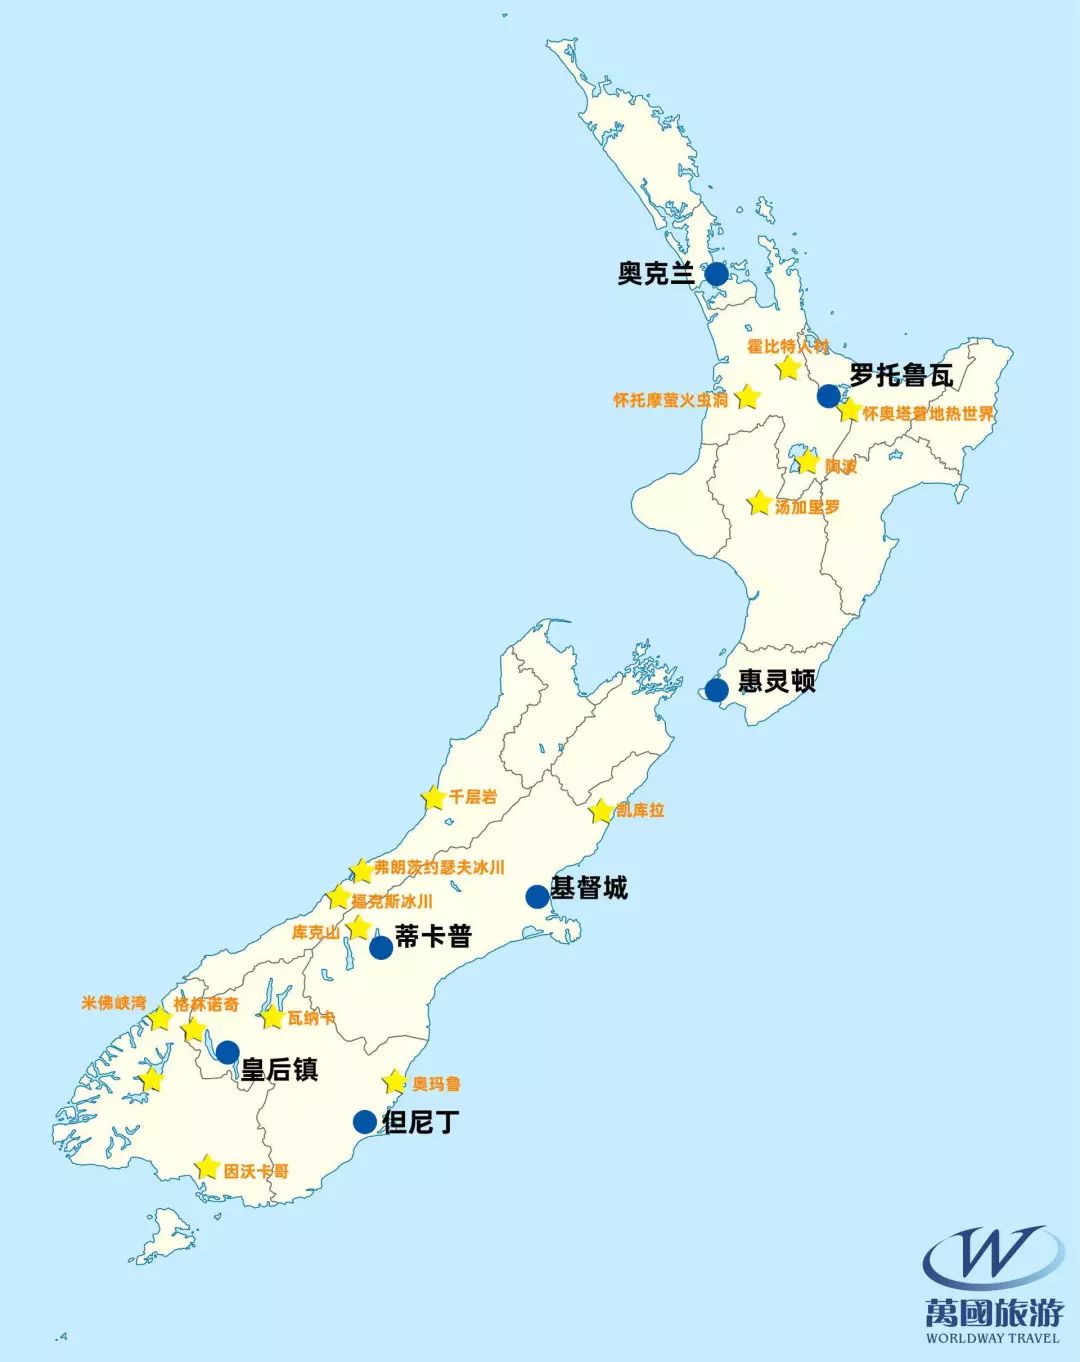 新西兰万国假期 · 新西兰景点地图